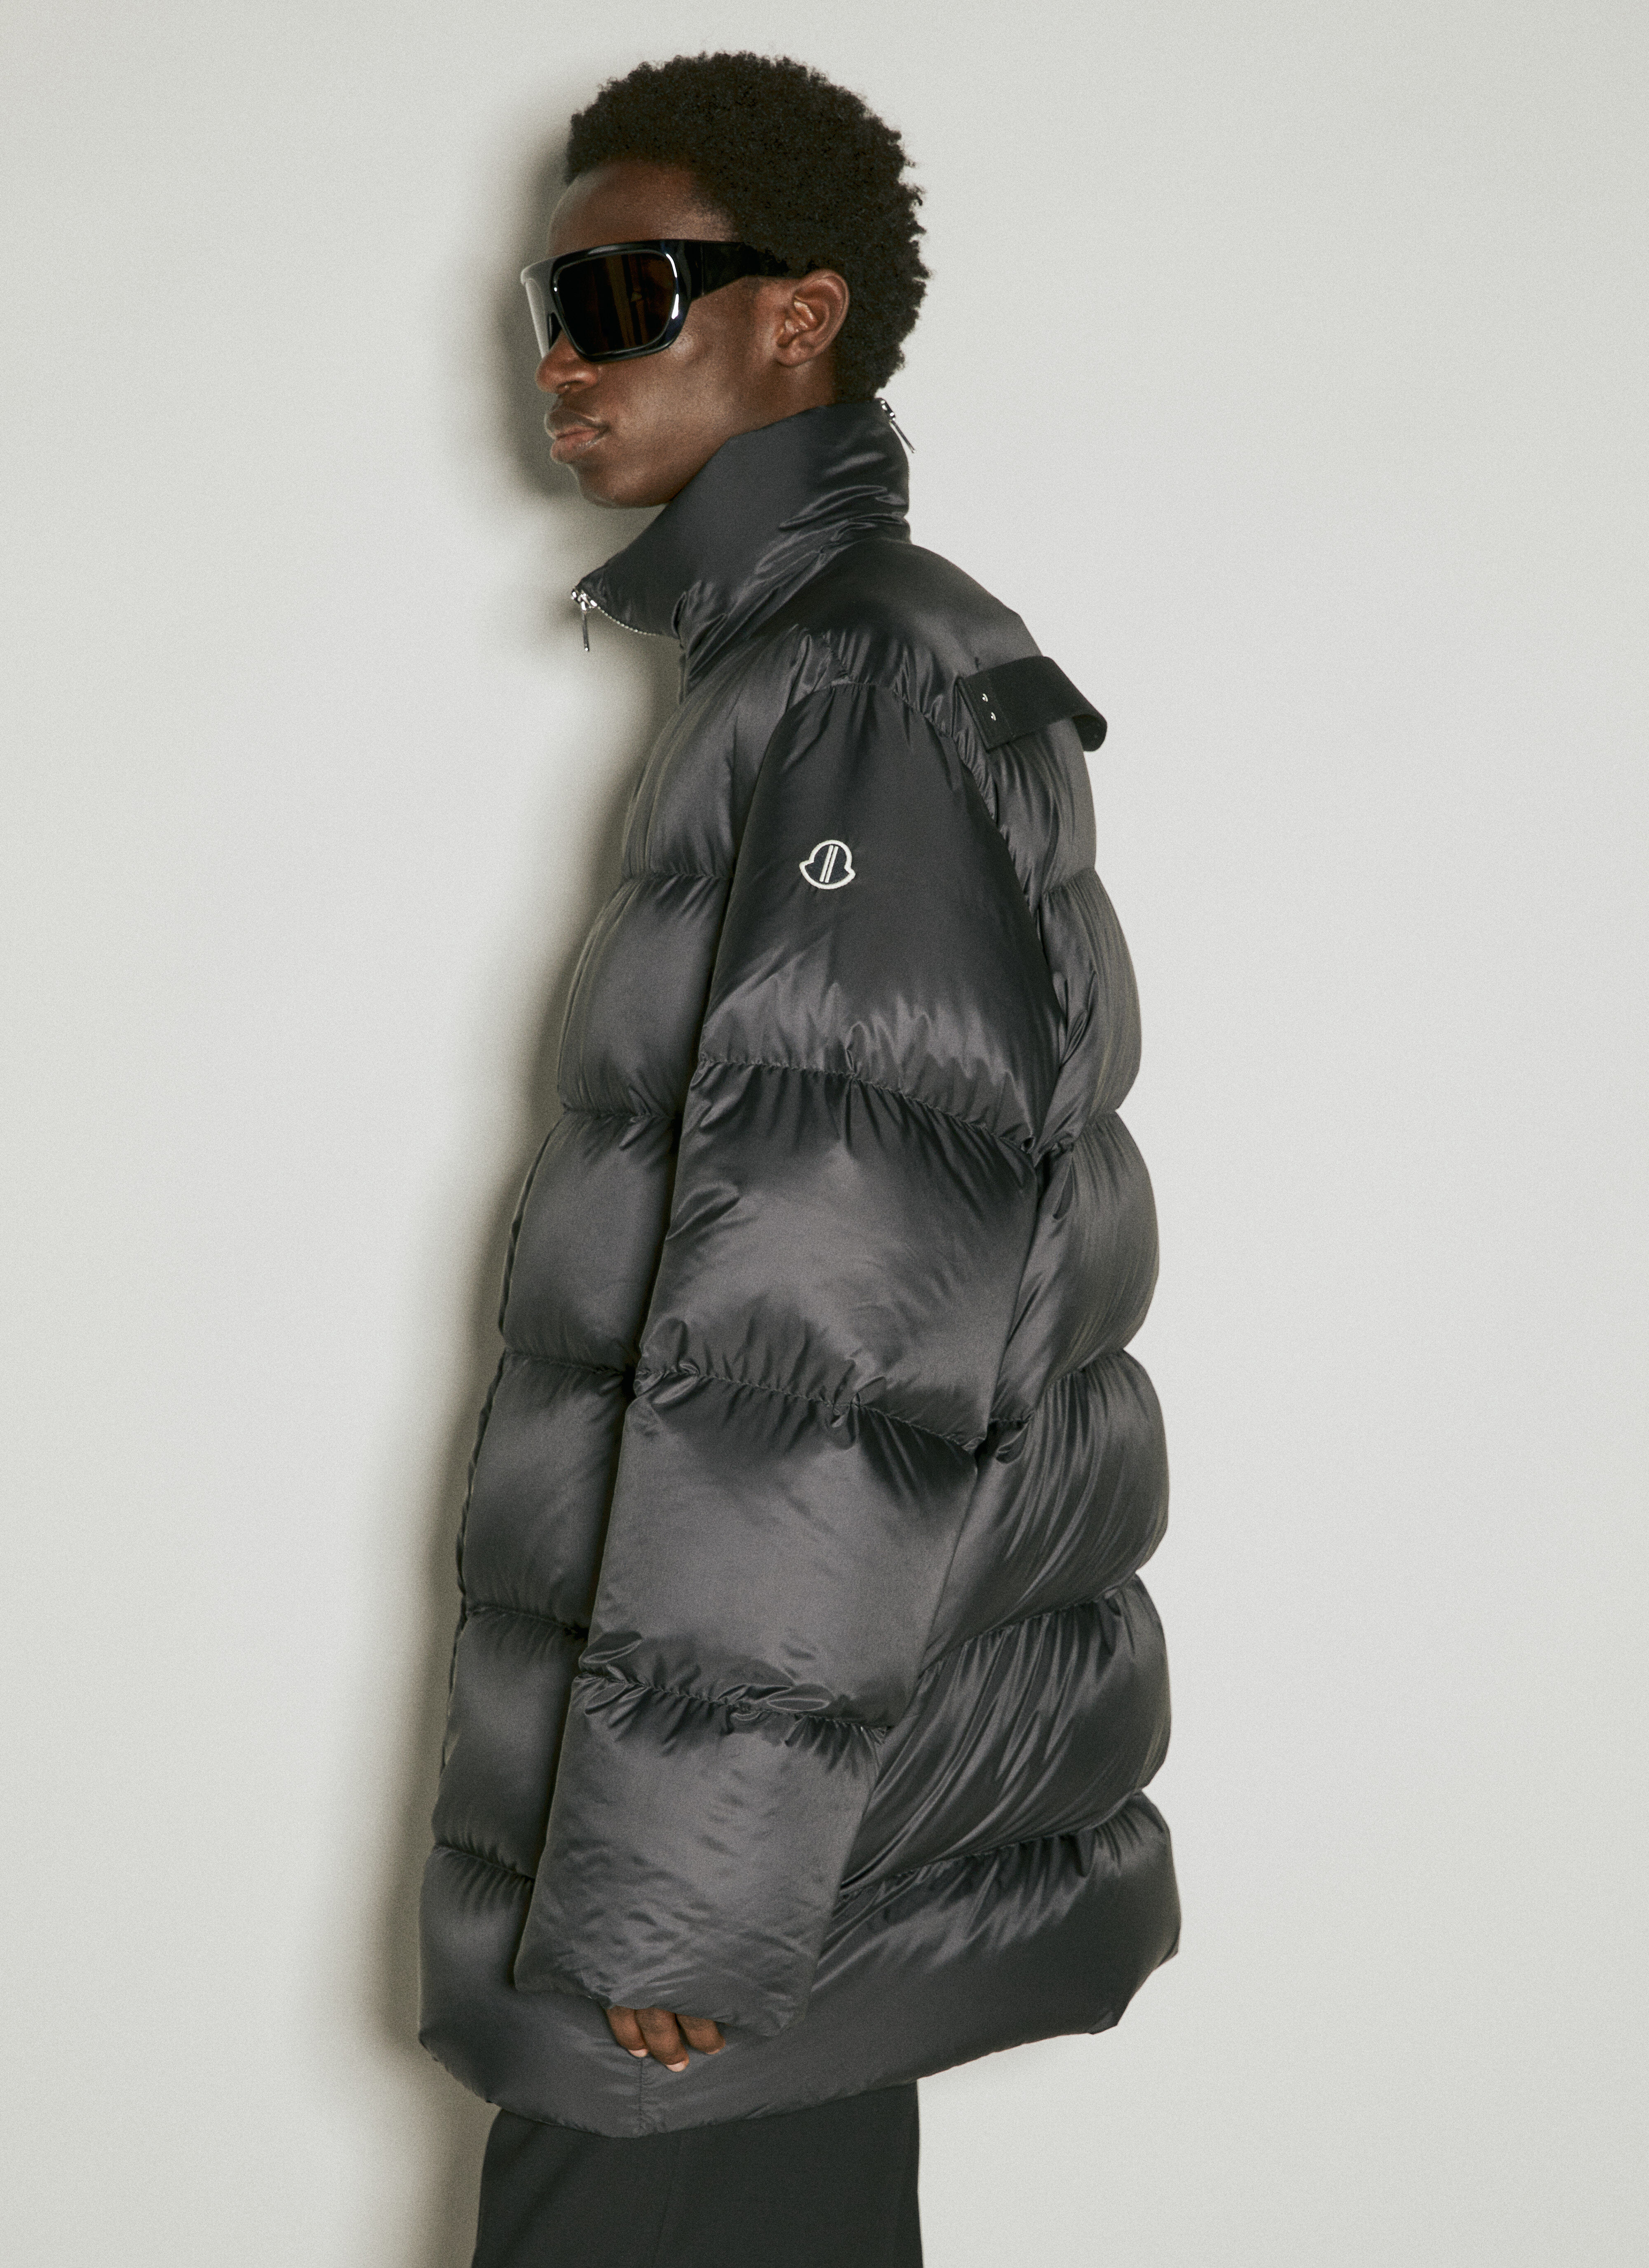 Moncler x Roc Nation designed by Jay-Z サイクロピック ロングダウンコート ブラック mrn0156002